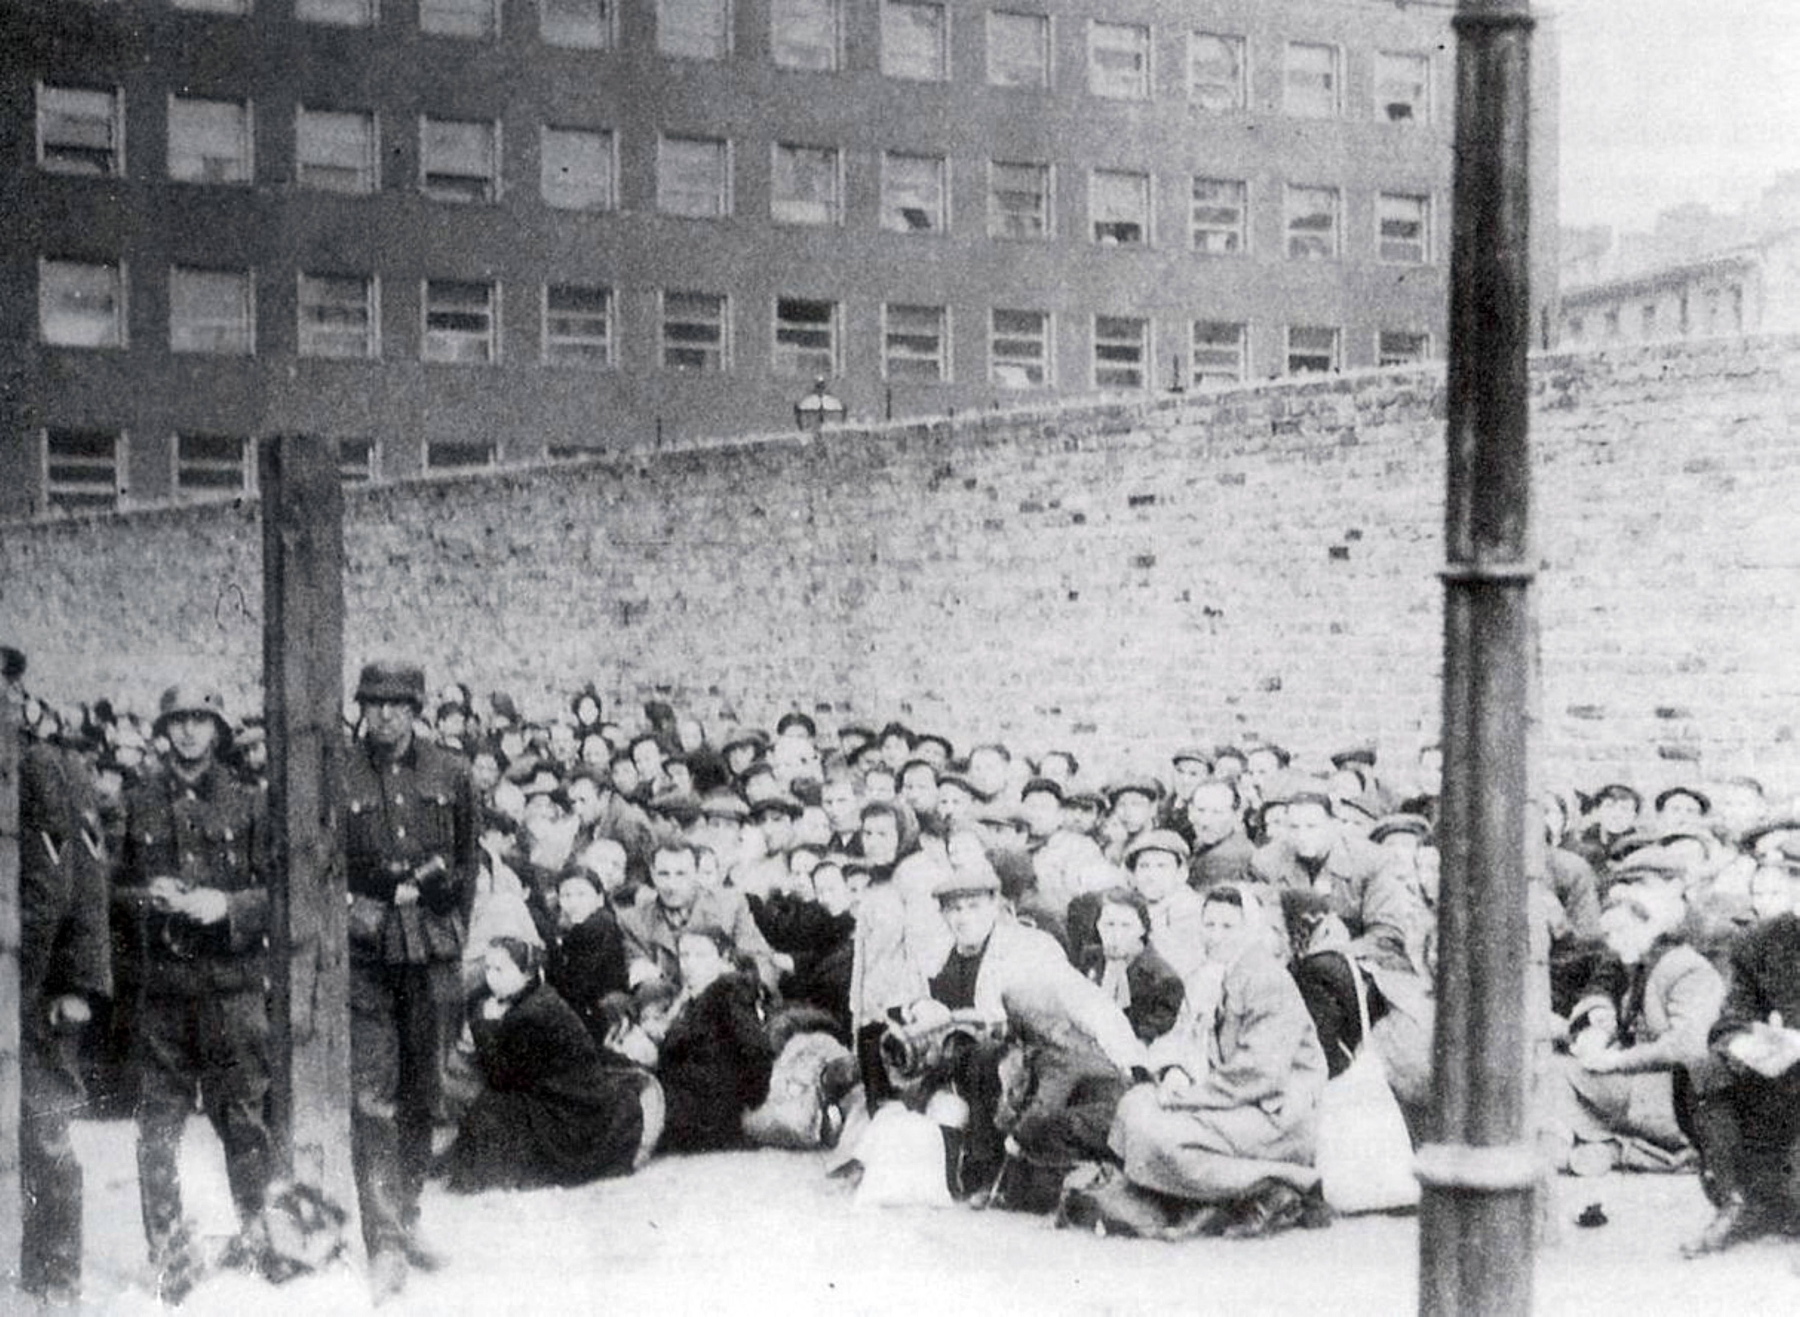 Umschlagplatz, miejsce, z którego latem 1942 r. deportowano setki tysięcy Żydów z getta warszawskiego